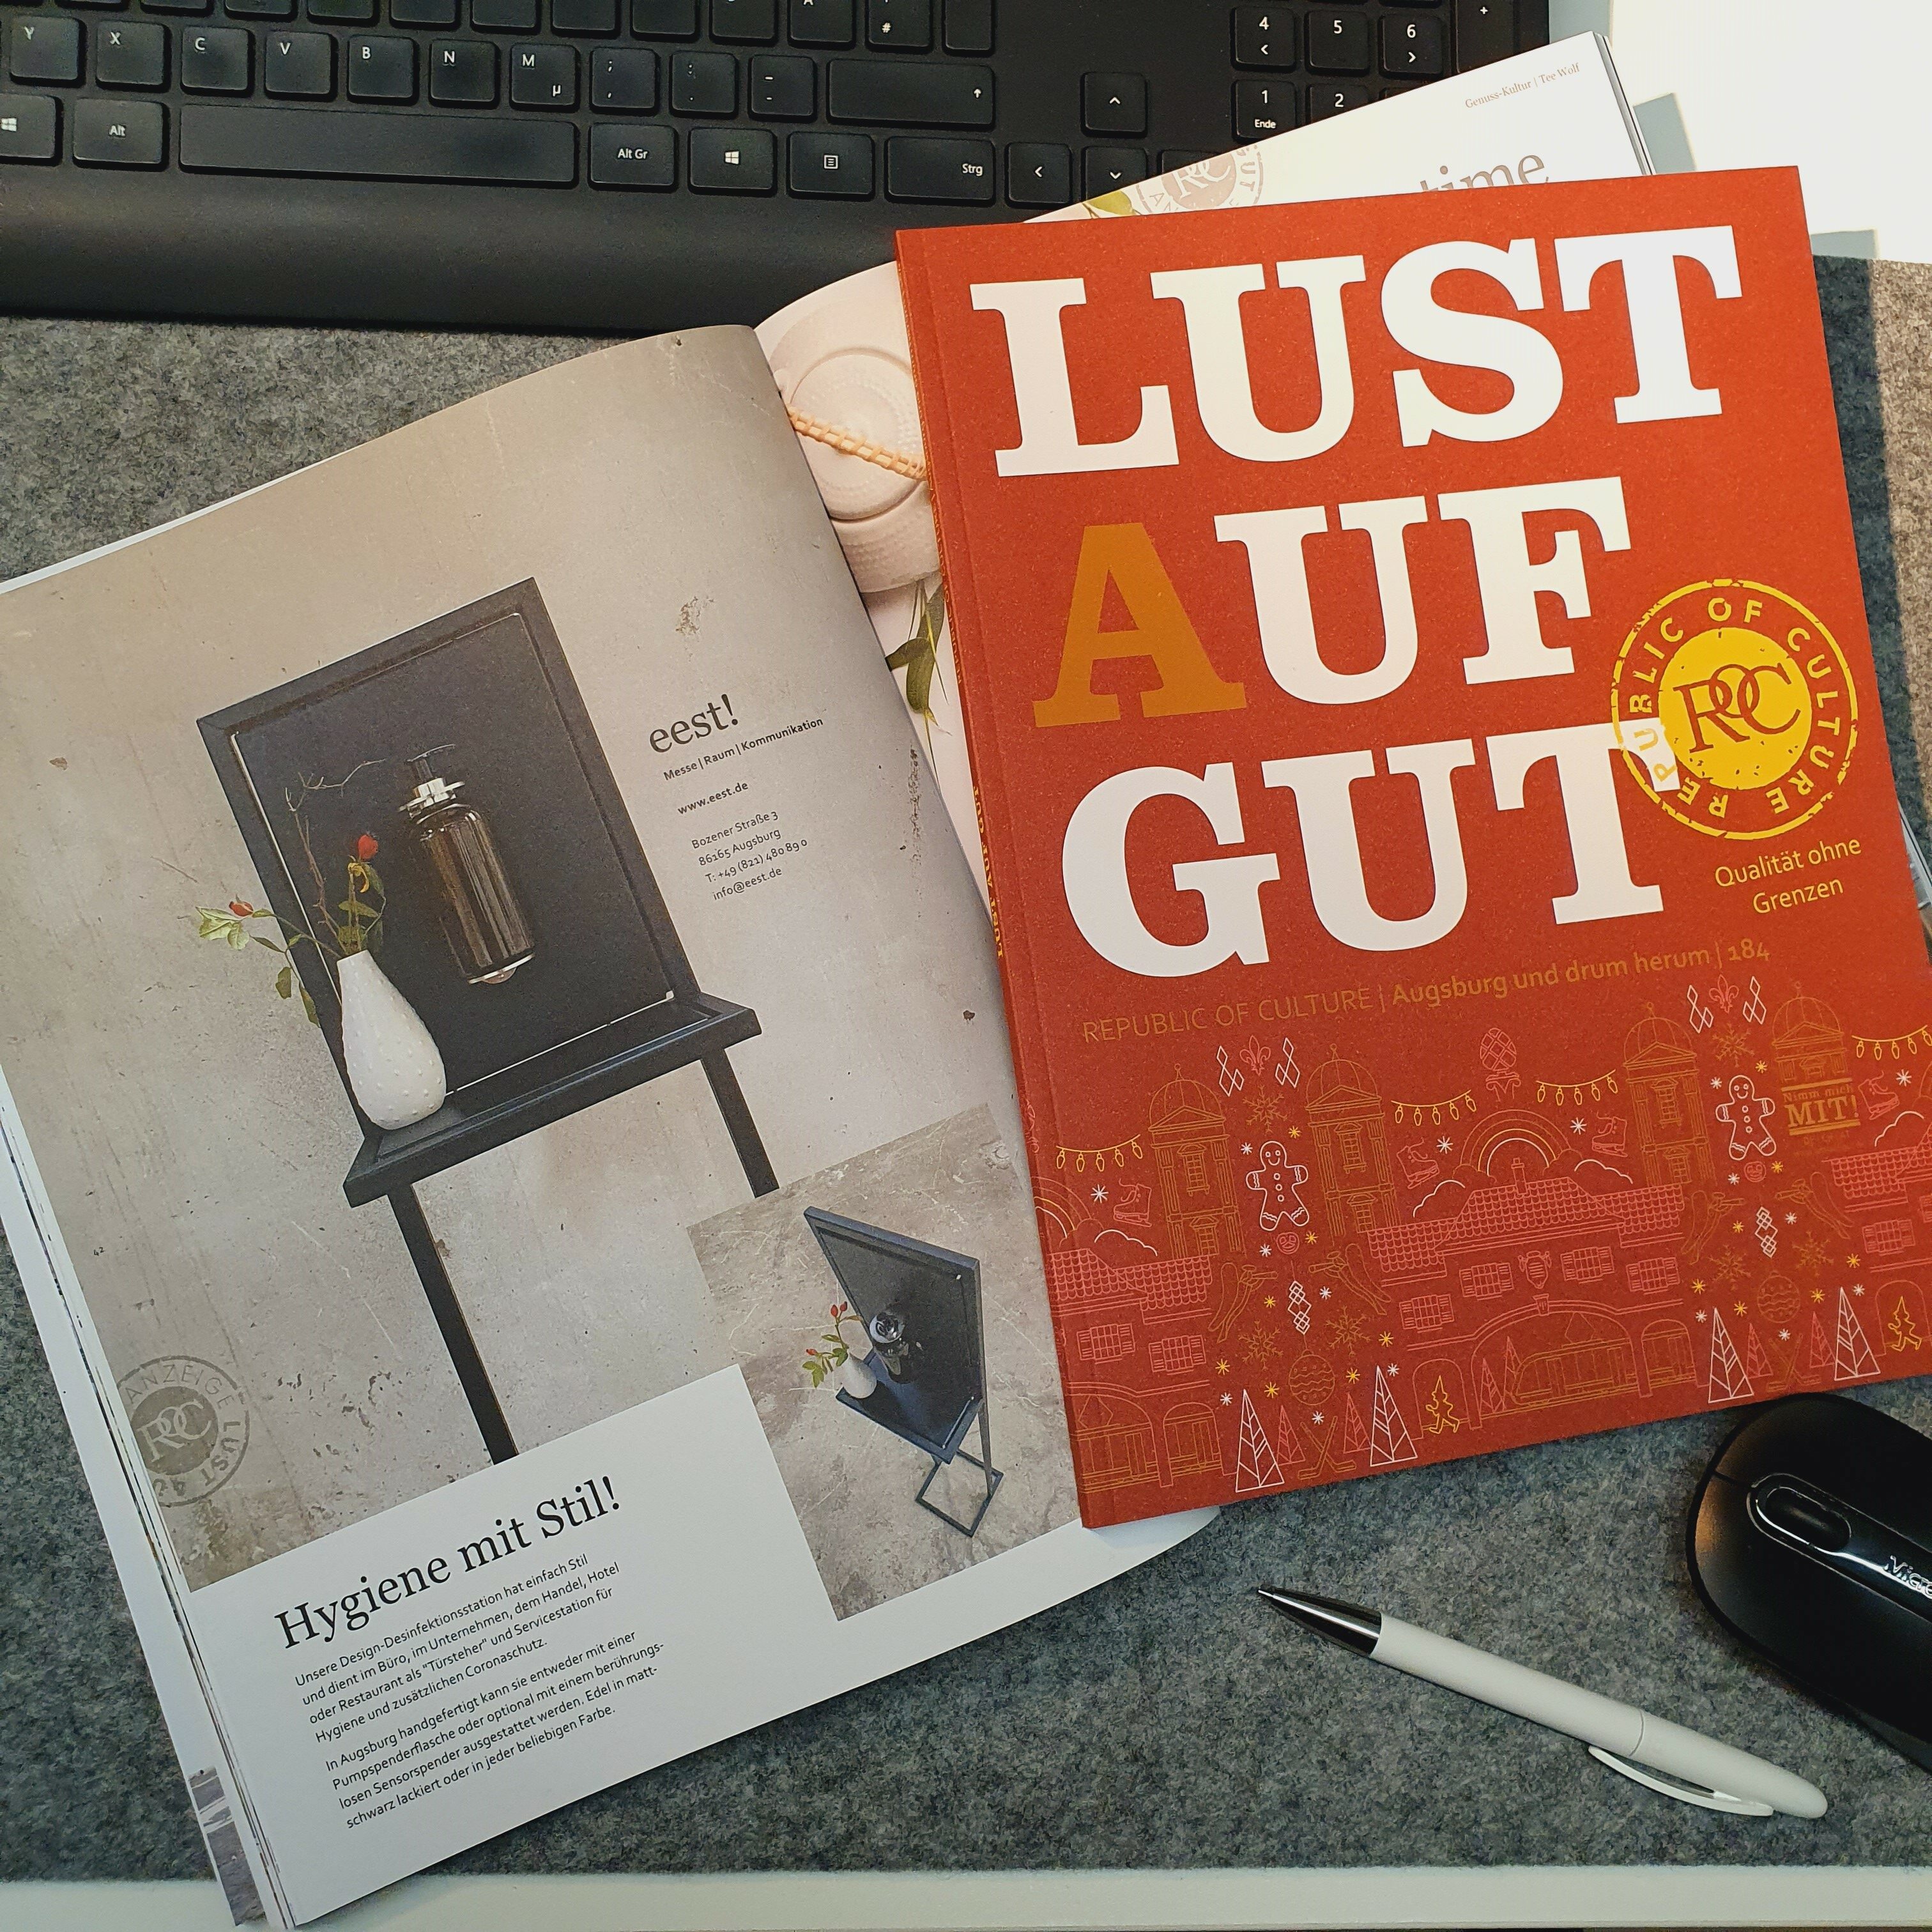 Die eest! Desinfektionsstation in der neuen Ausgabe von Lust Auf Gut!